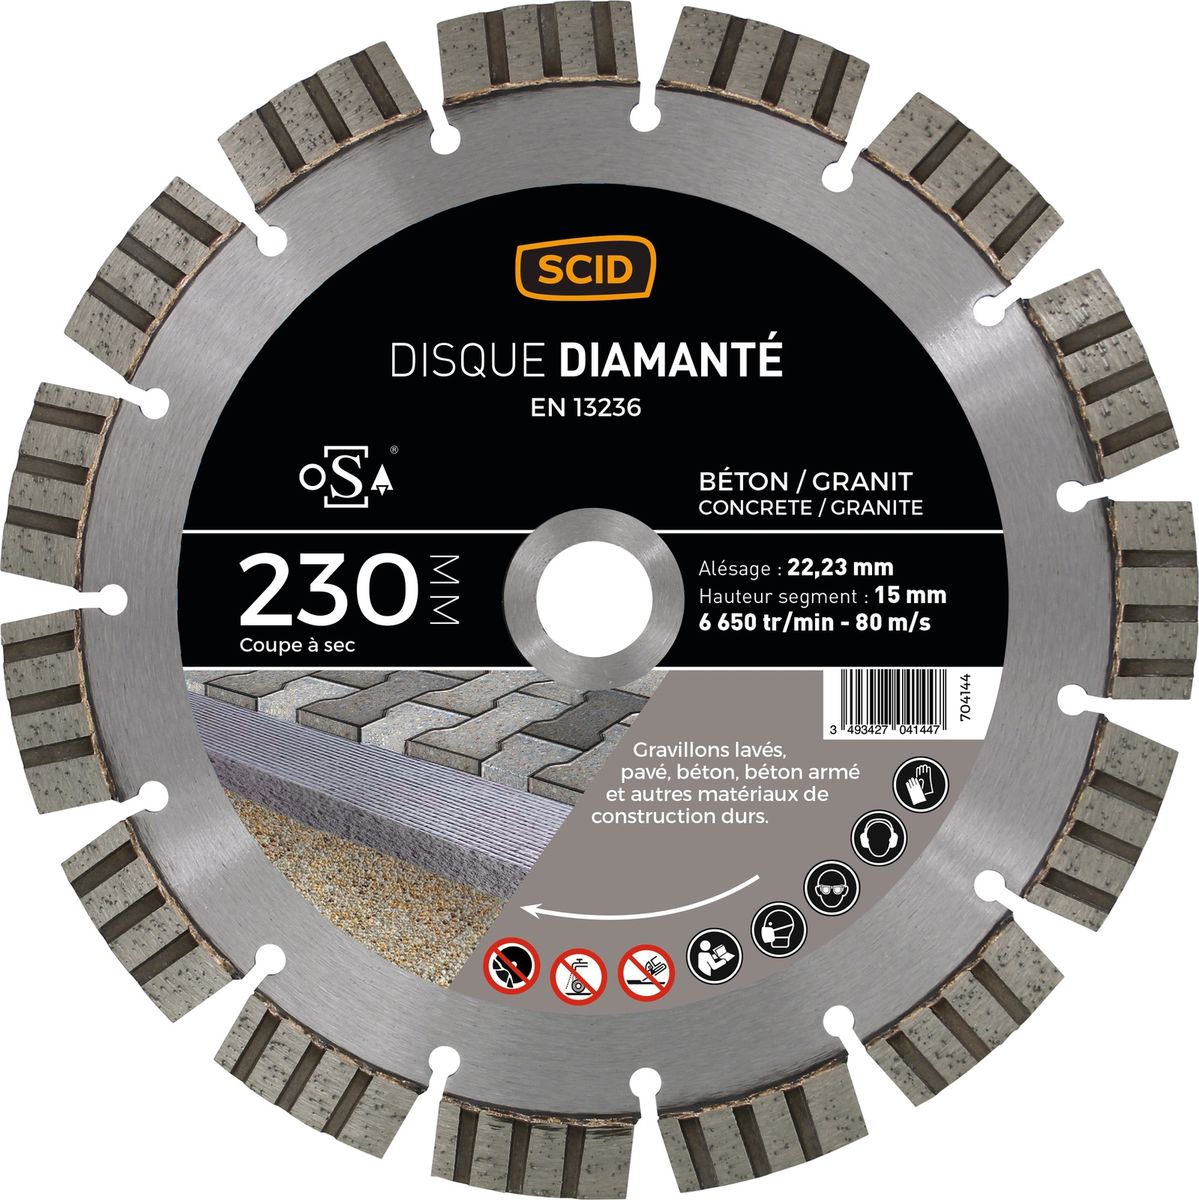 Disque Diamante Beton Granit Prestige Scid - Diametre 230 Mm